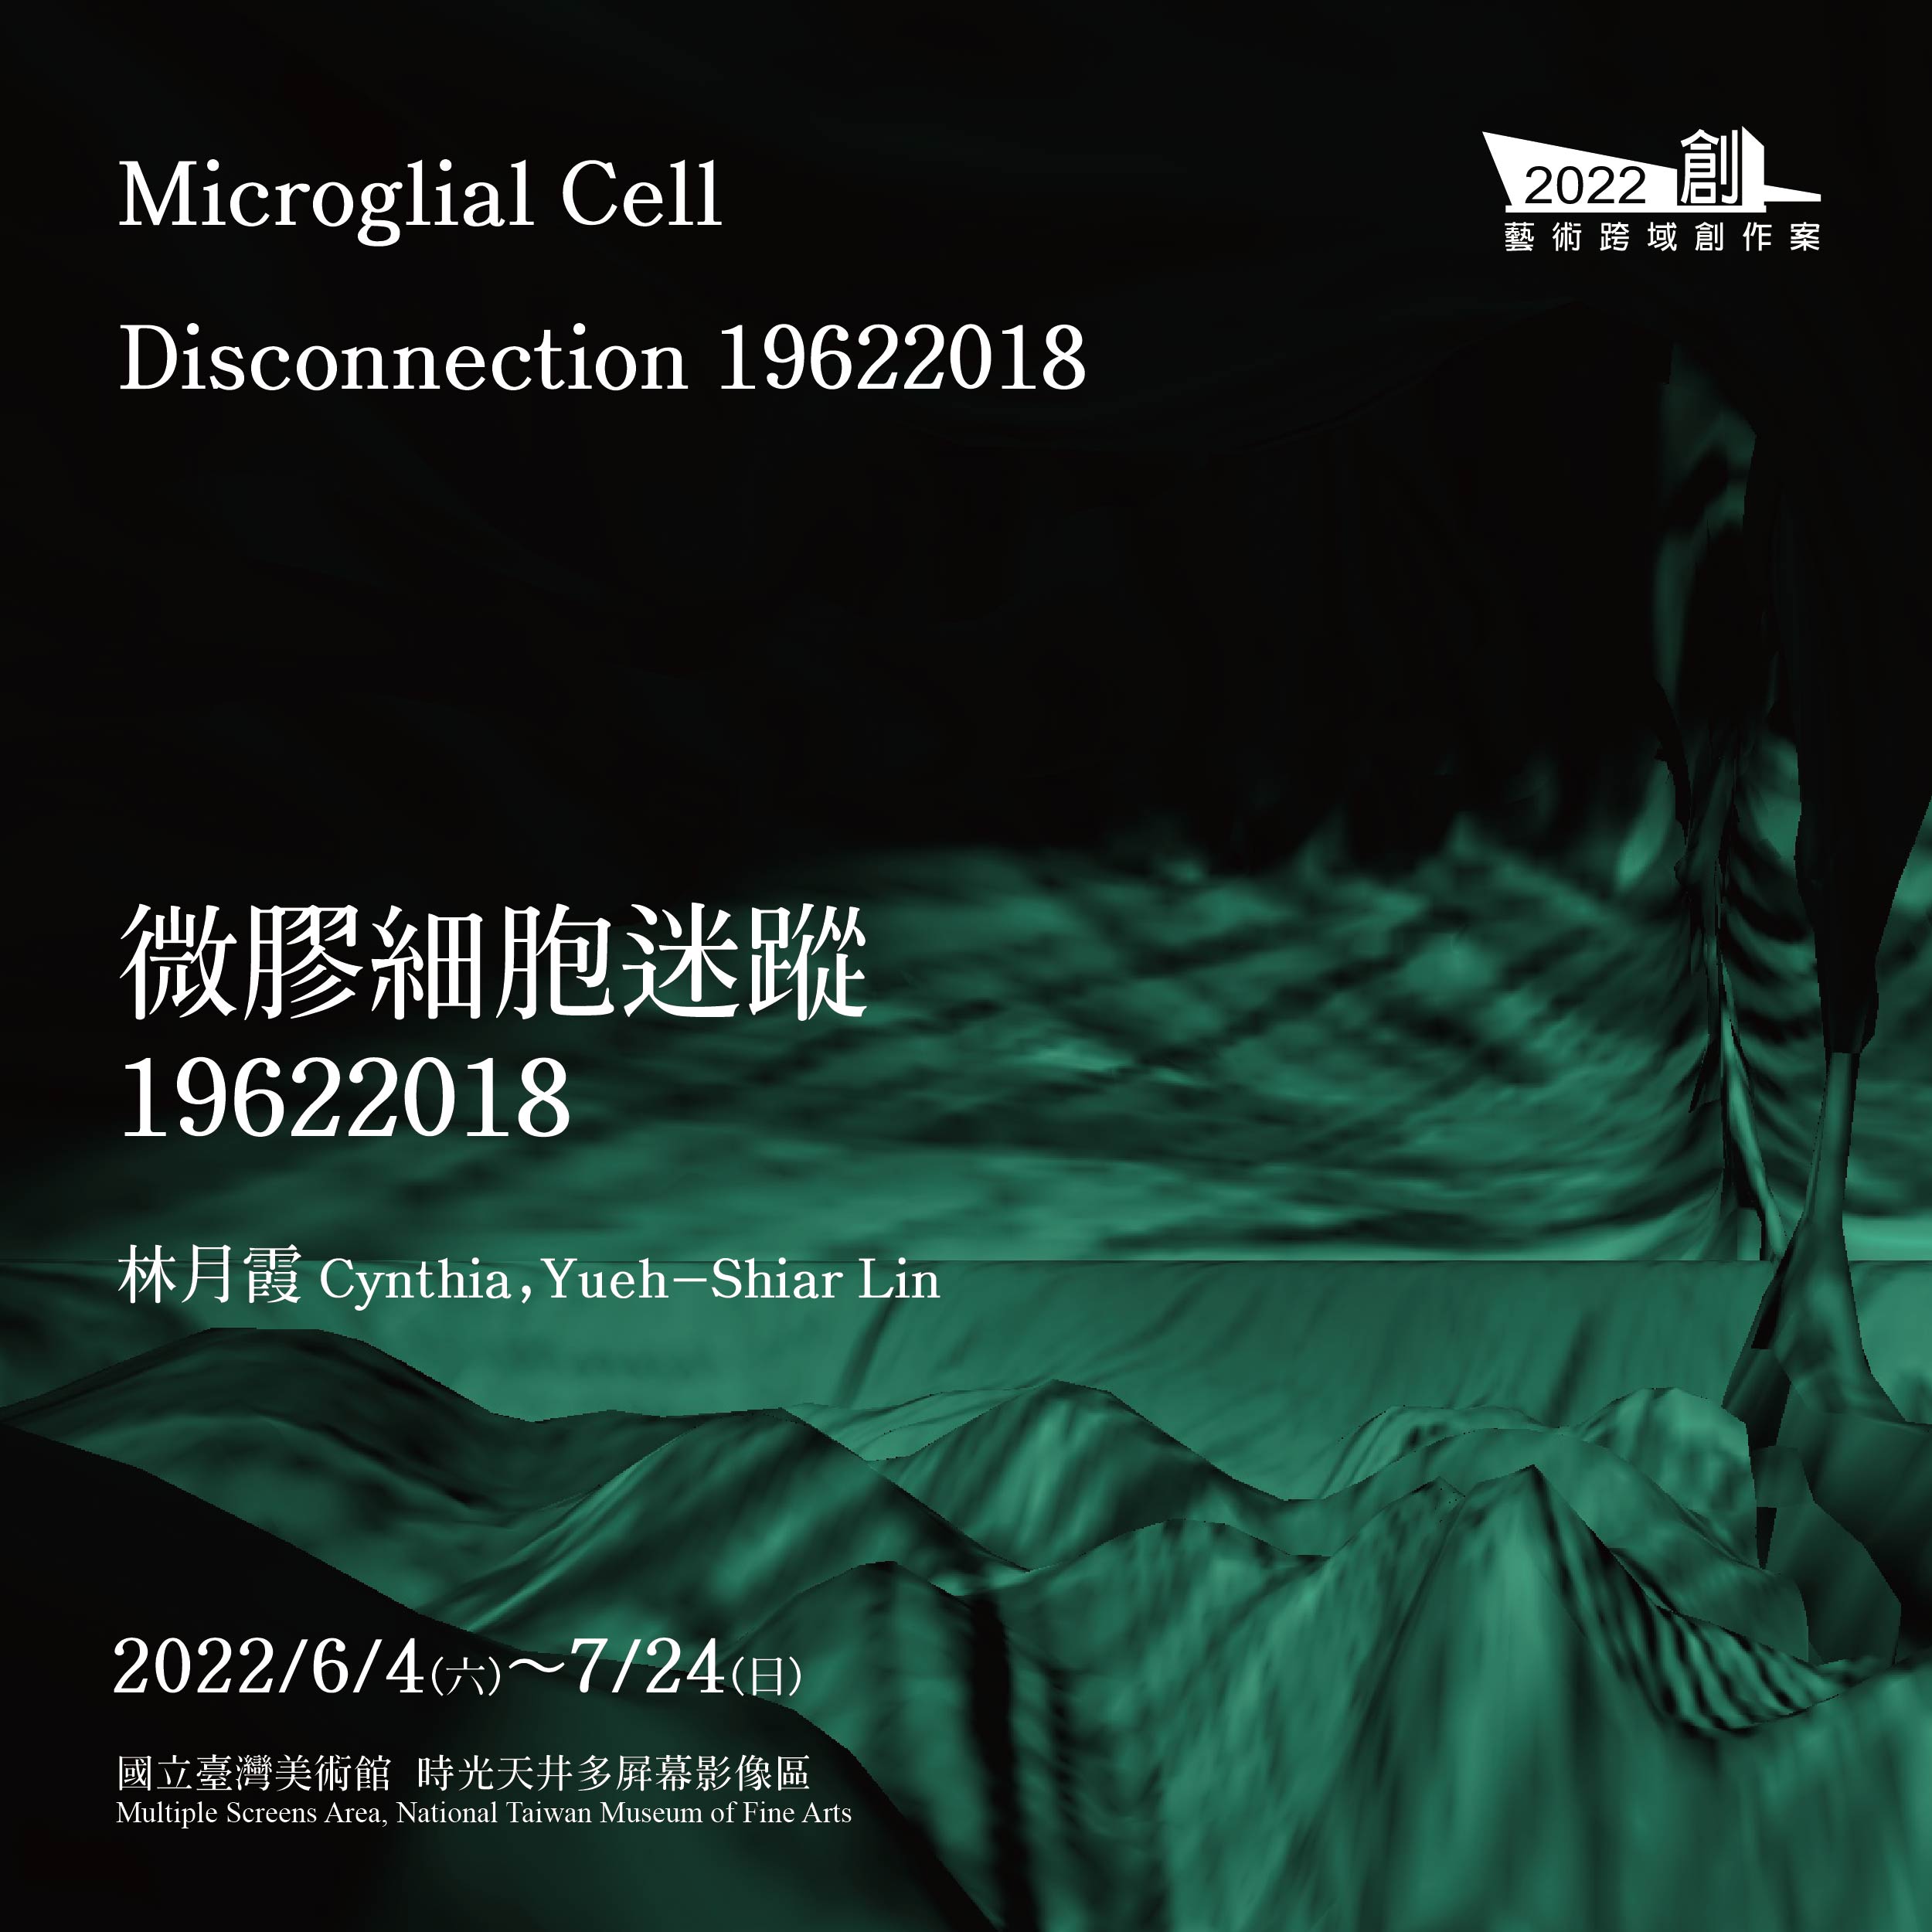 2022藝術跨域創作案「林月霞: 微膠細胞迷蹤19622018」